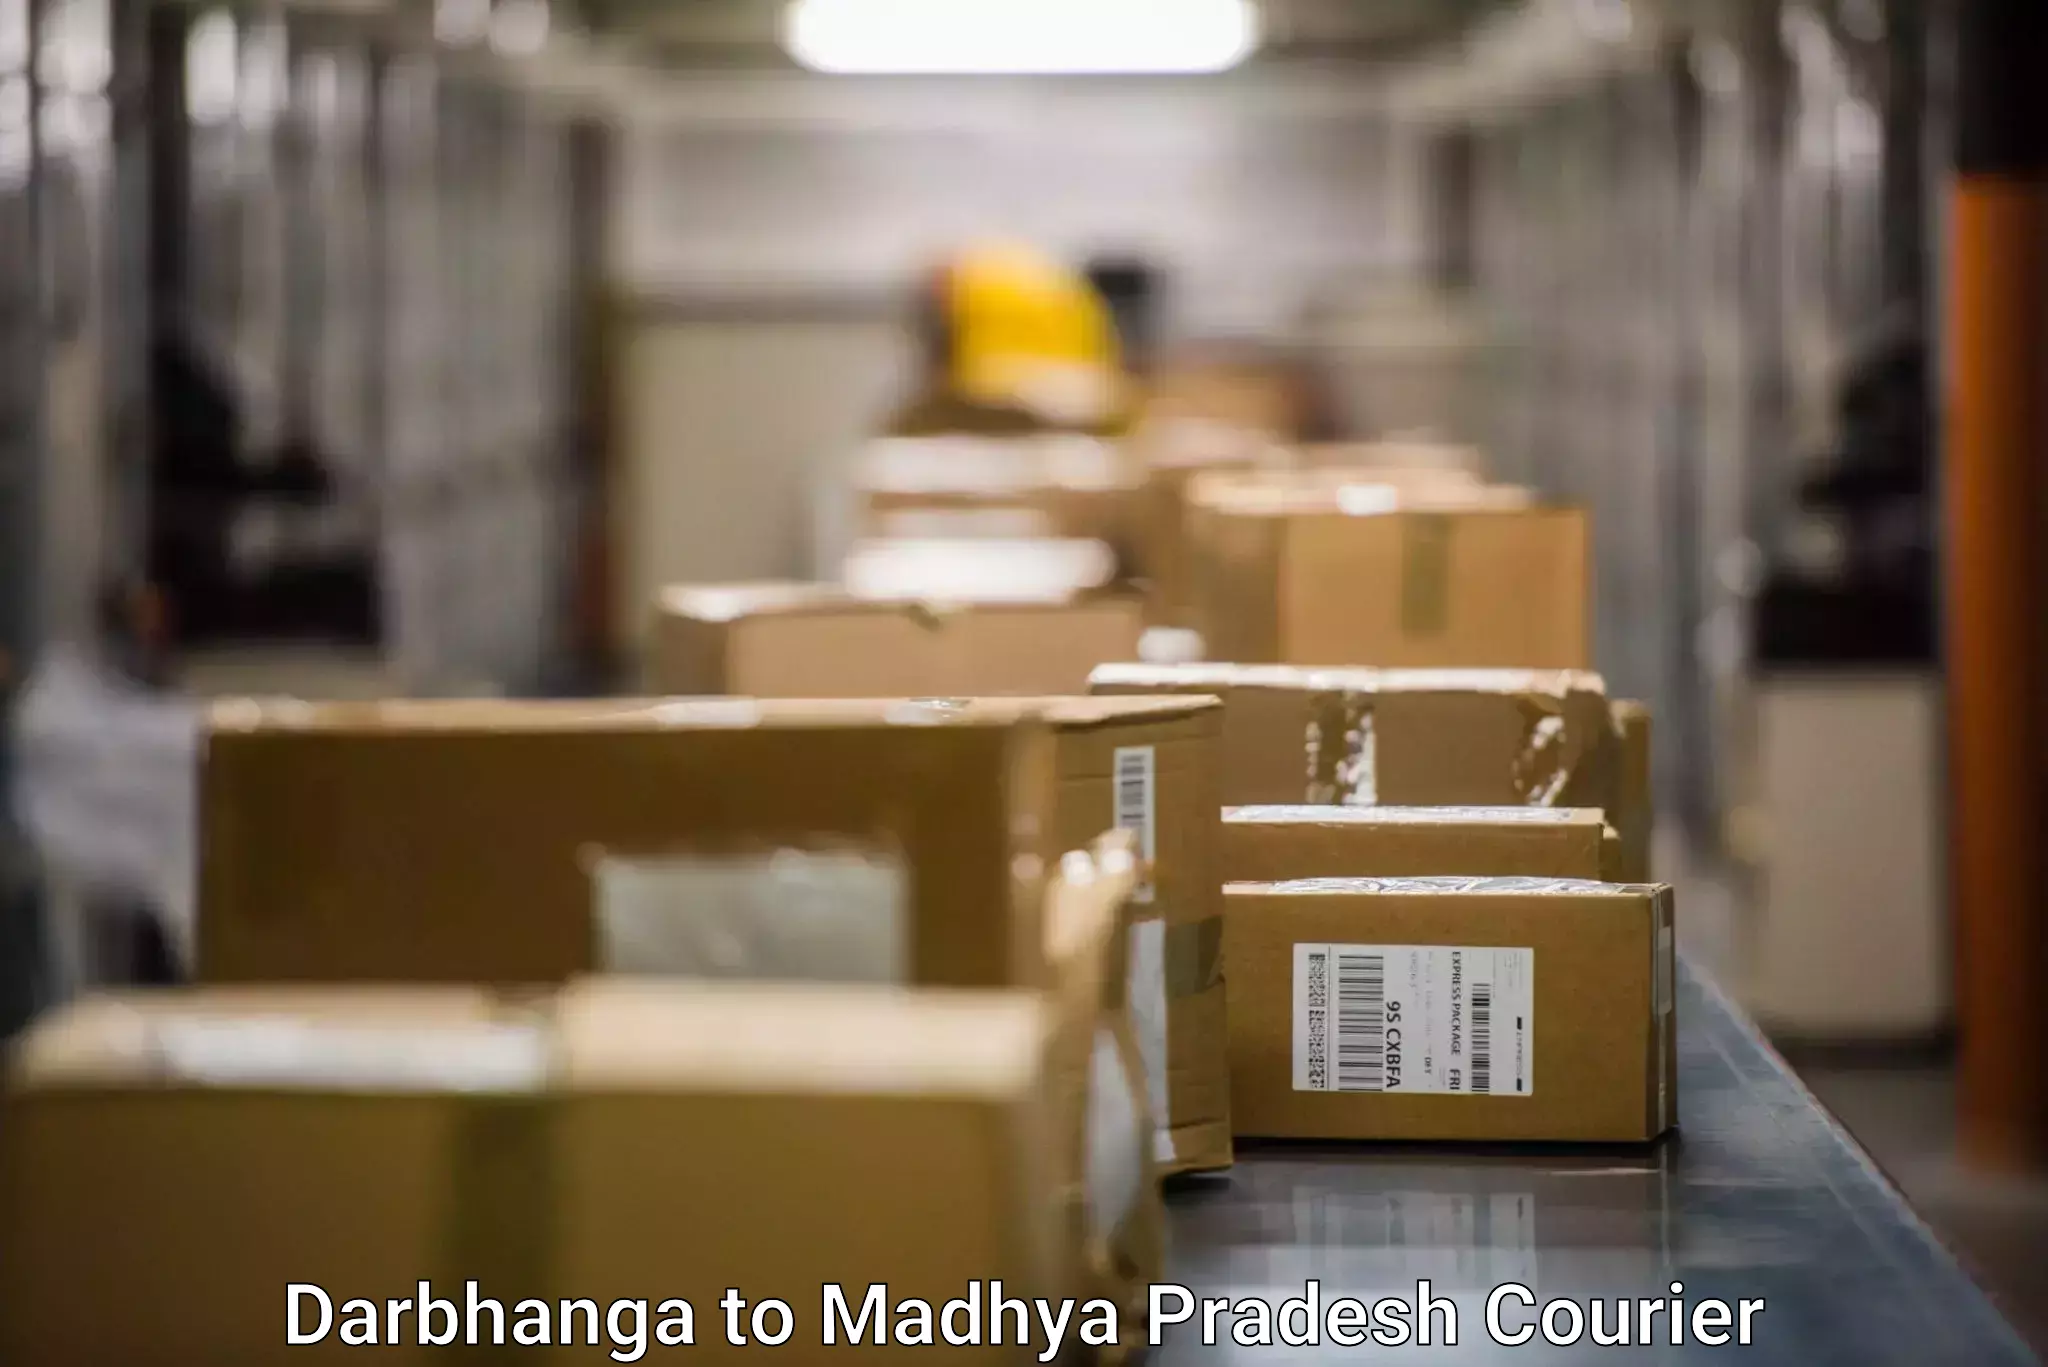 Advanced shipping network Darbhanga to Nagod